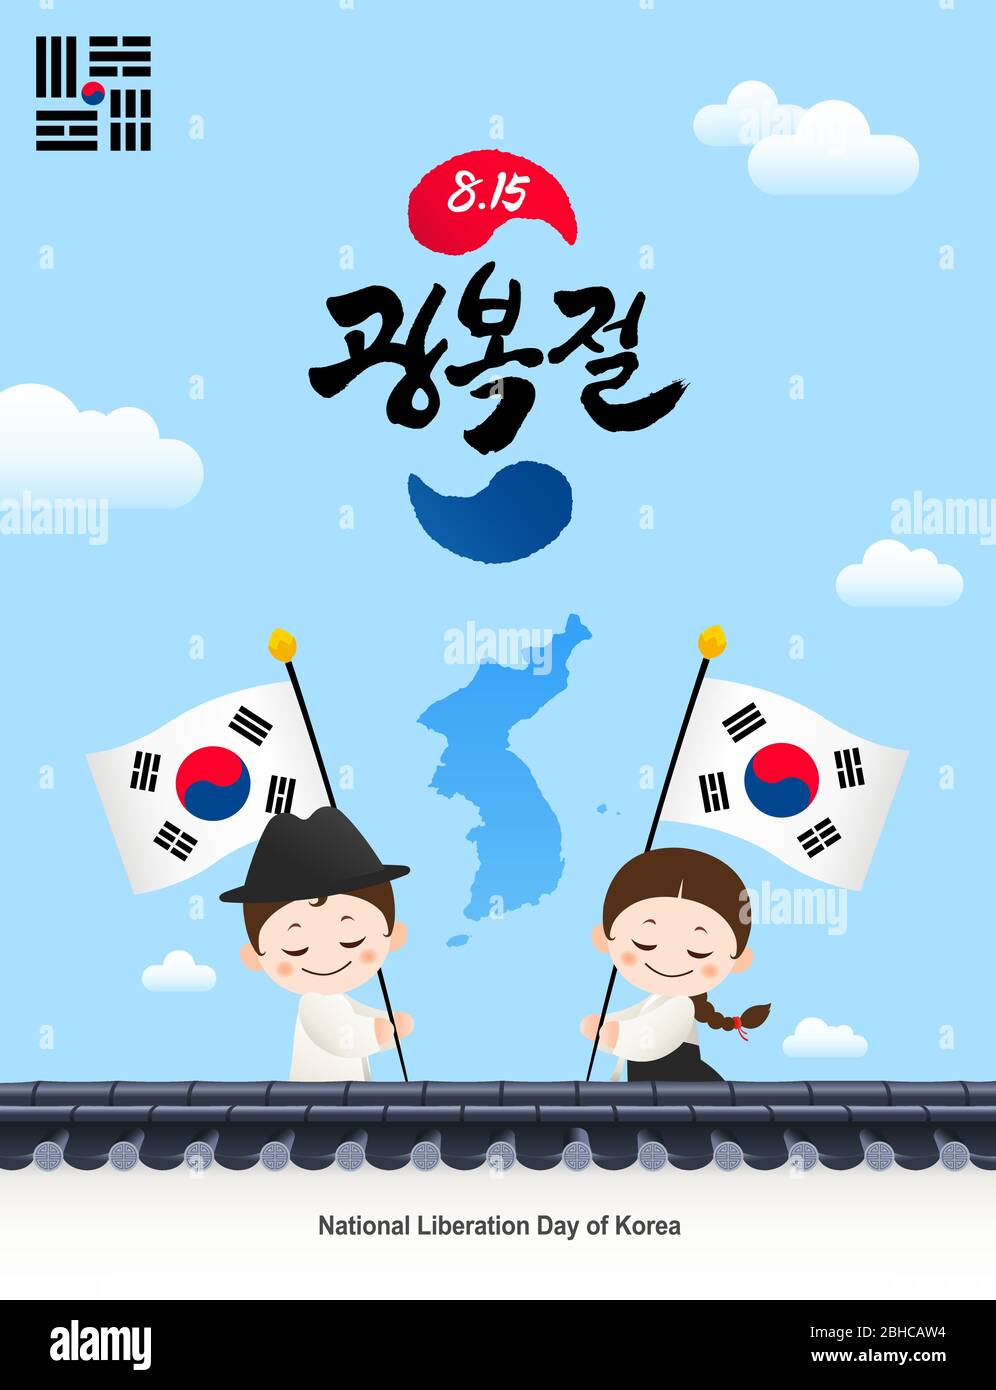 Journée de libération nationale de la Corée. Les clôtures et cartes traditionnelles de la Corée, les enfants Hanbok secouent Taegeukgi. Journée de libération de la Corée, traduction coréenne. Illustration de Vecteur